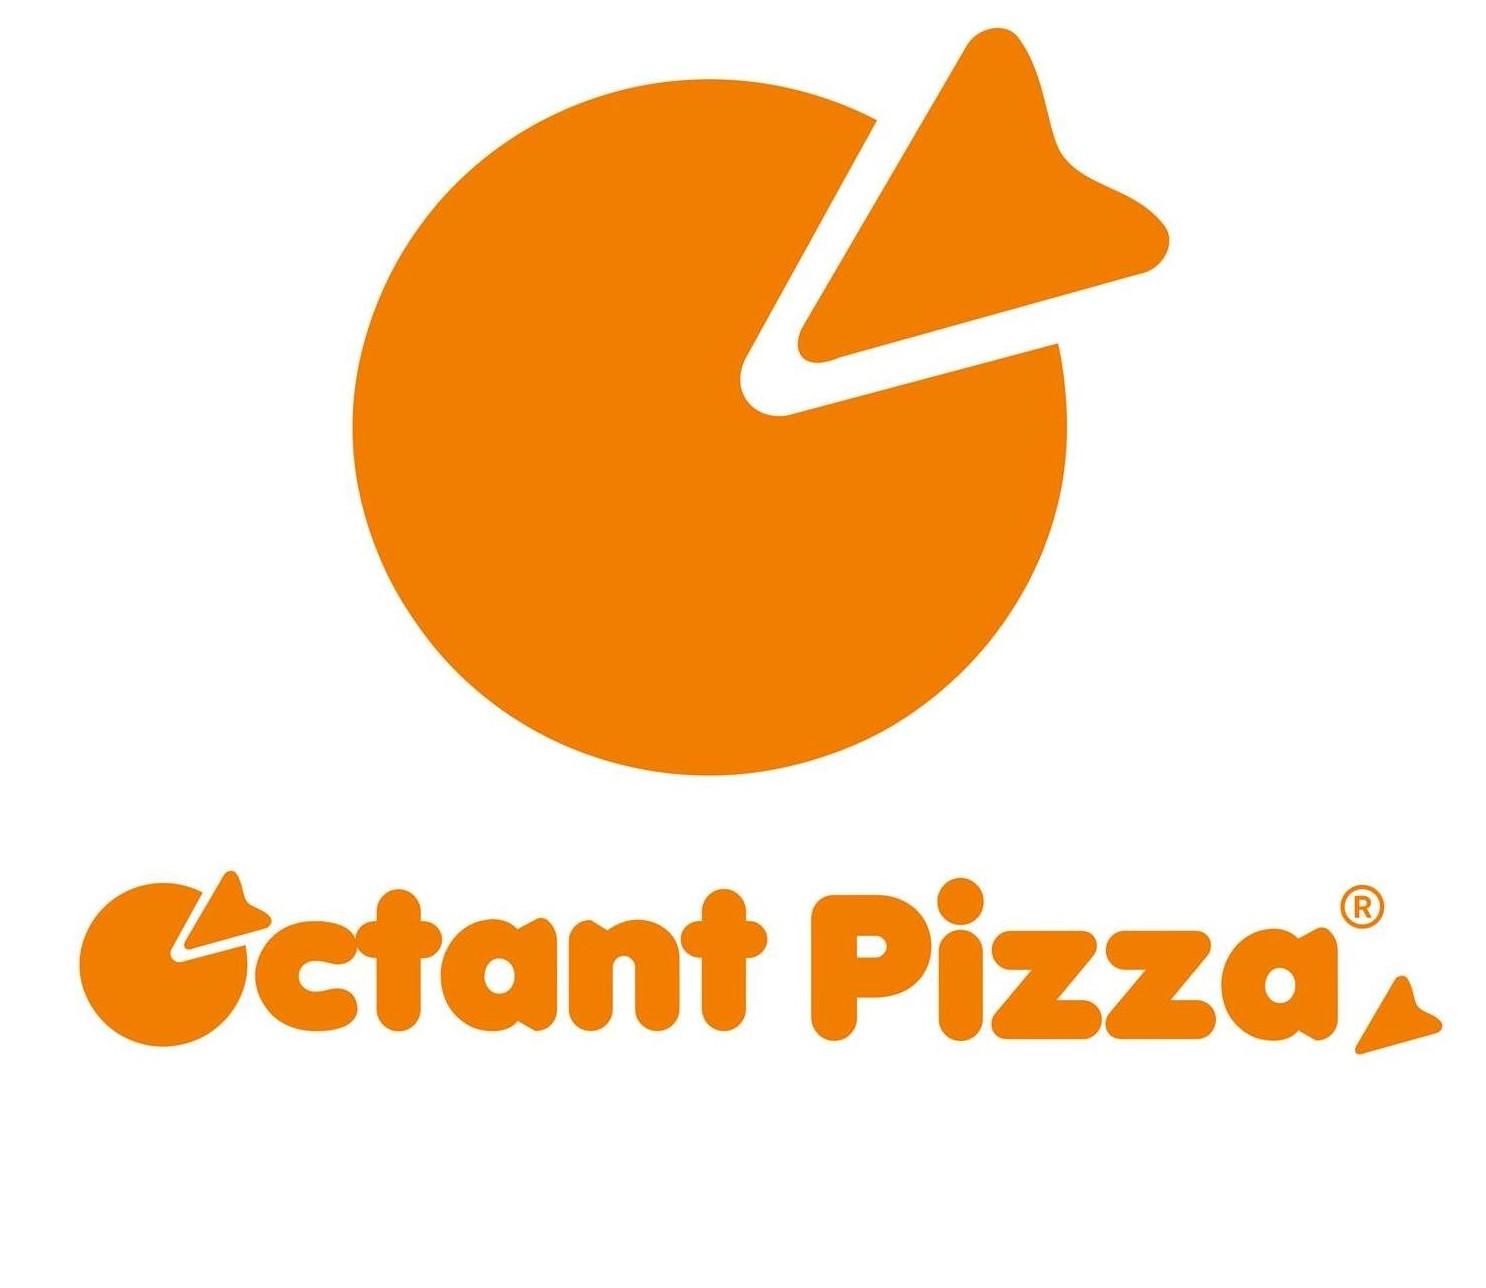 Octant Pizza - Vastral